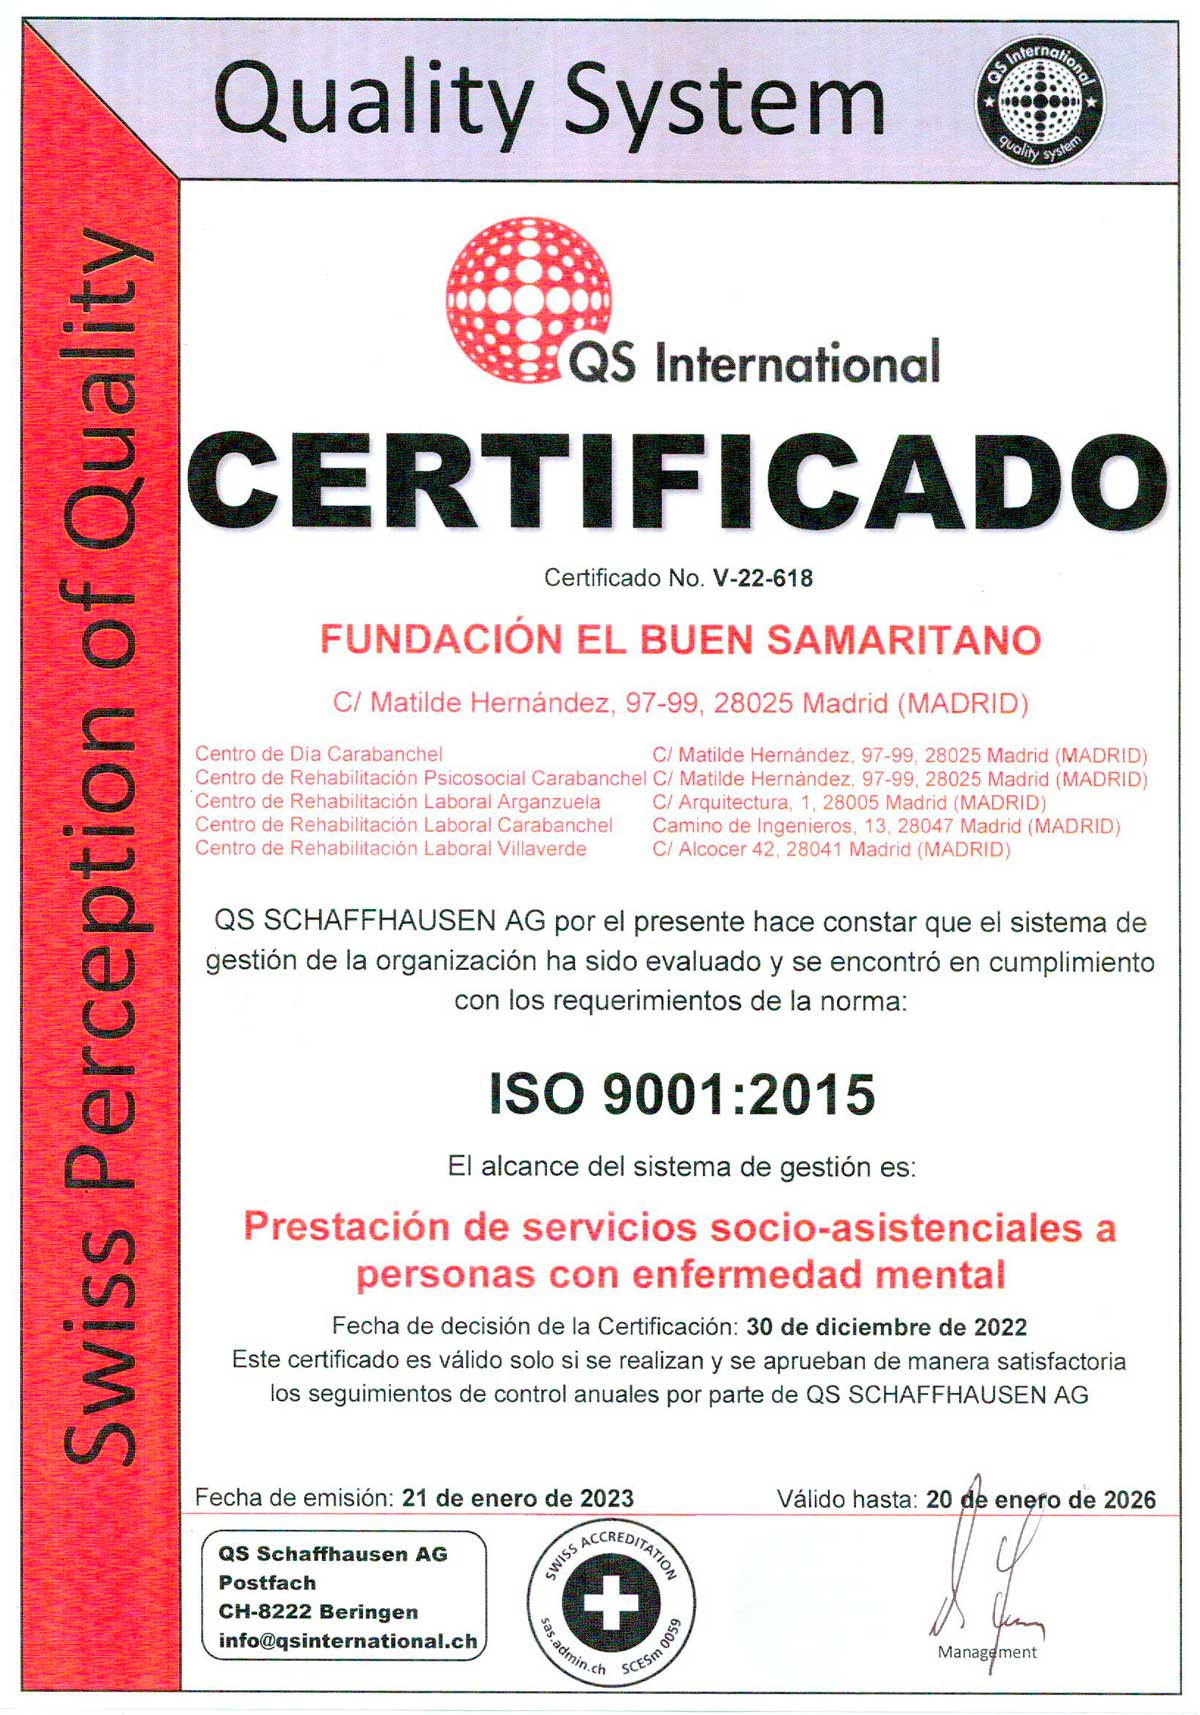 Certificado-ISO-9001-Fundacion-Buen-Samaritano-2023